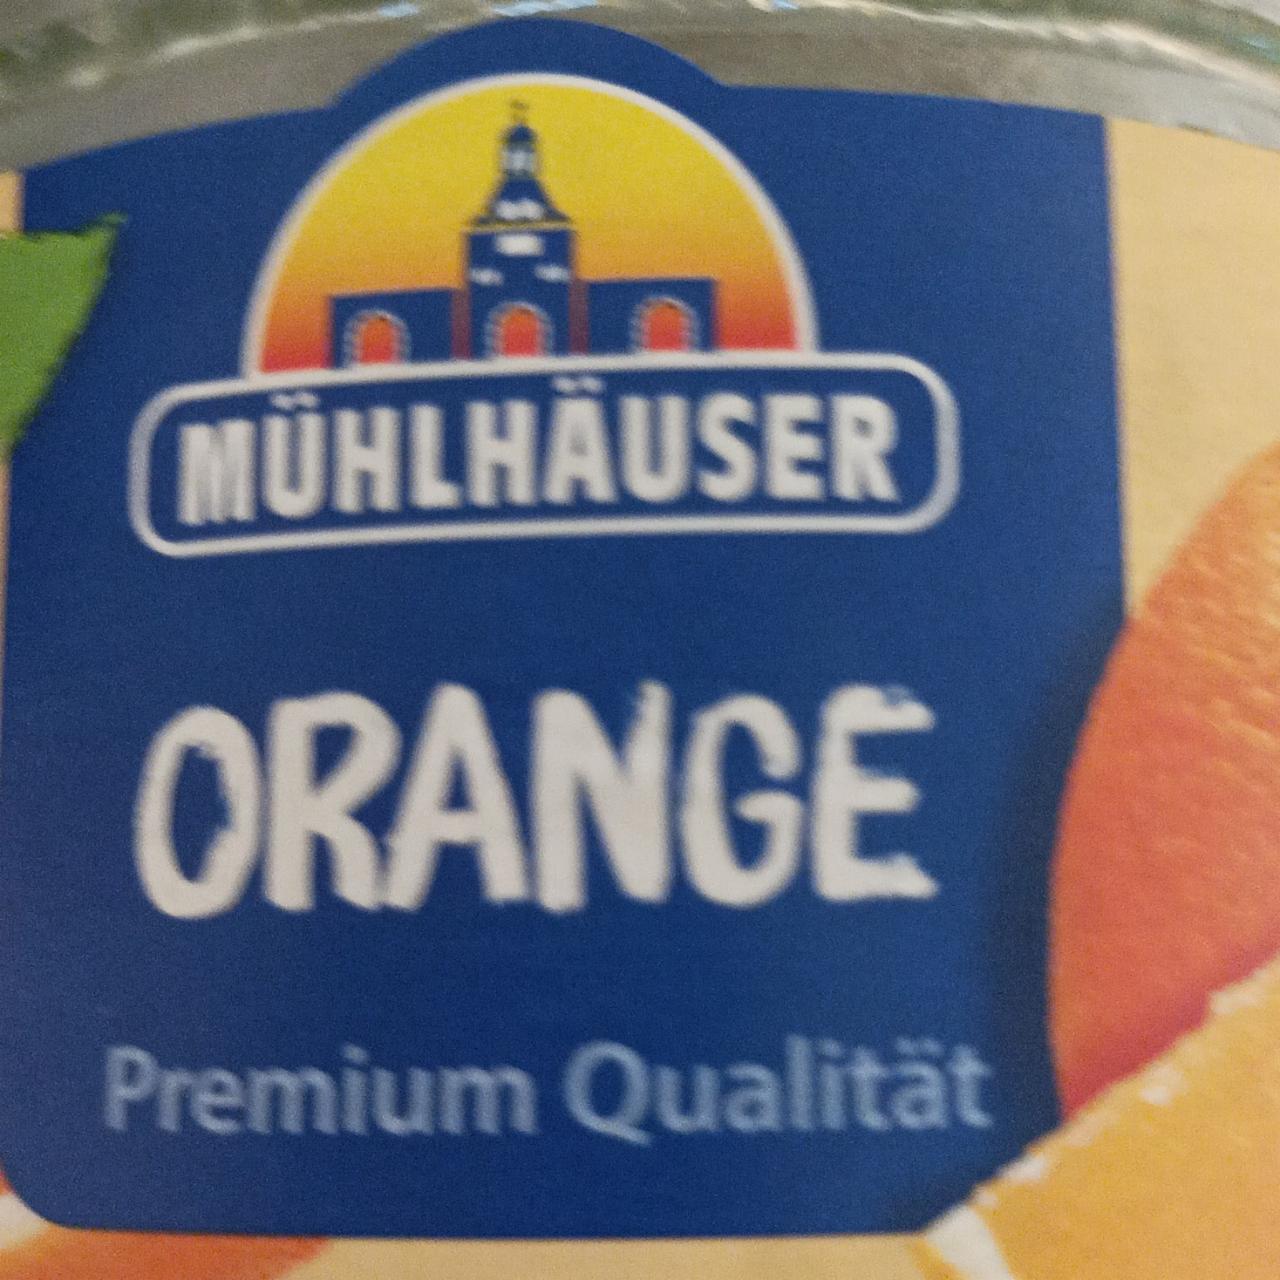 Fotografie - Orange Mühlhäuser